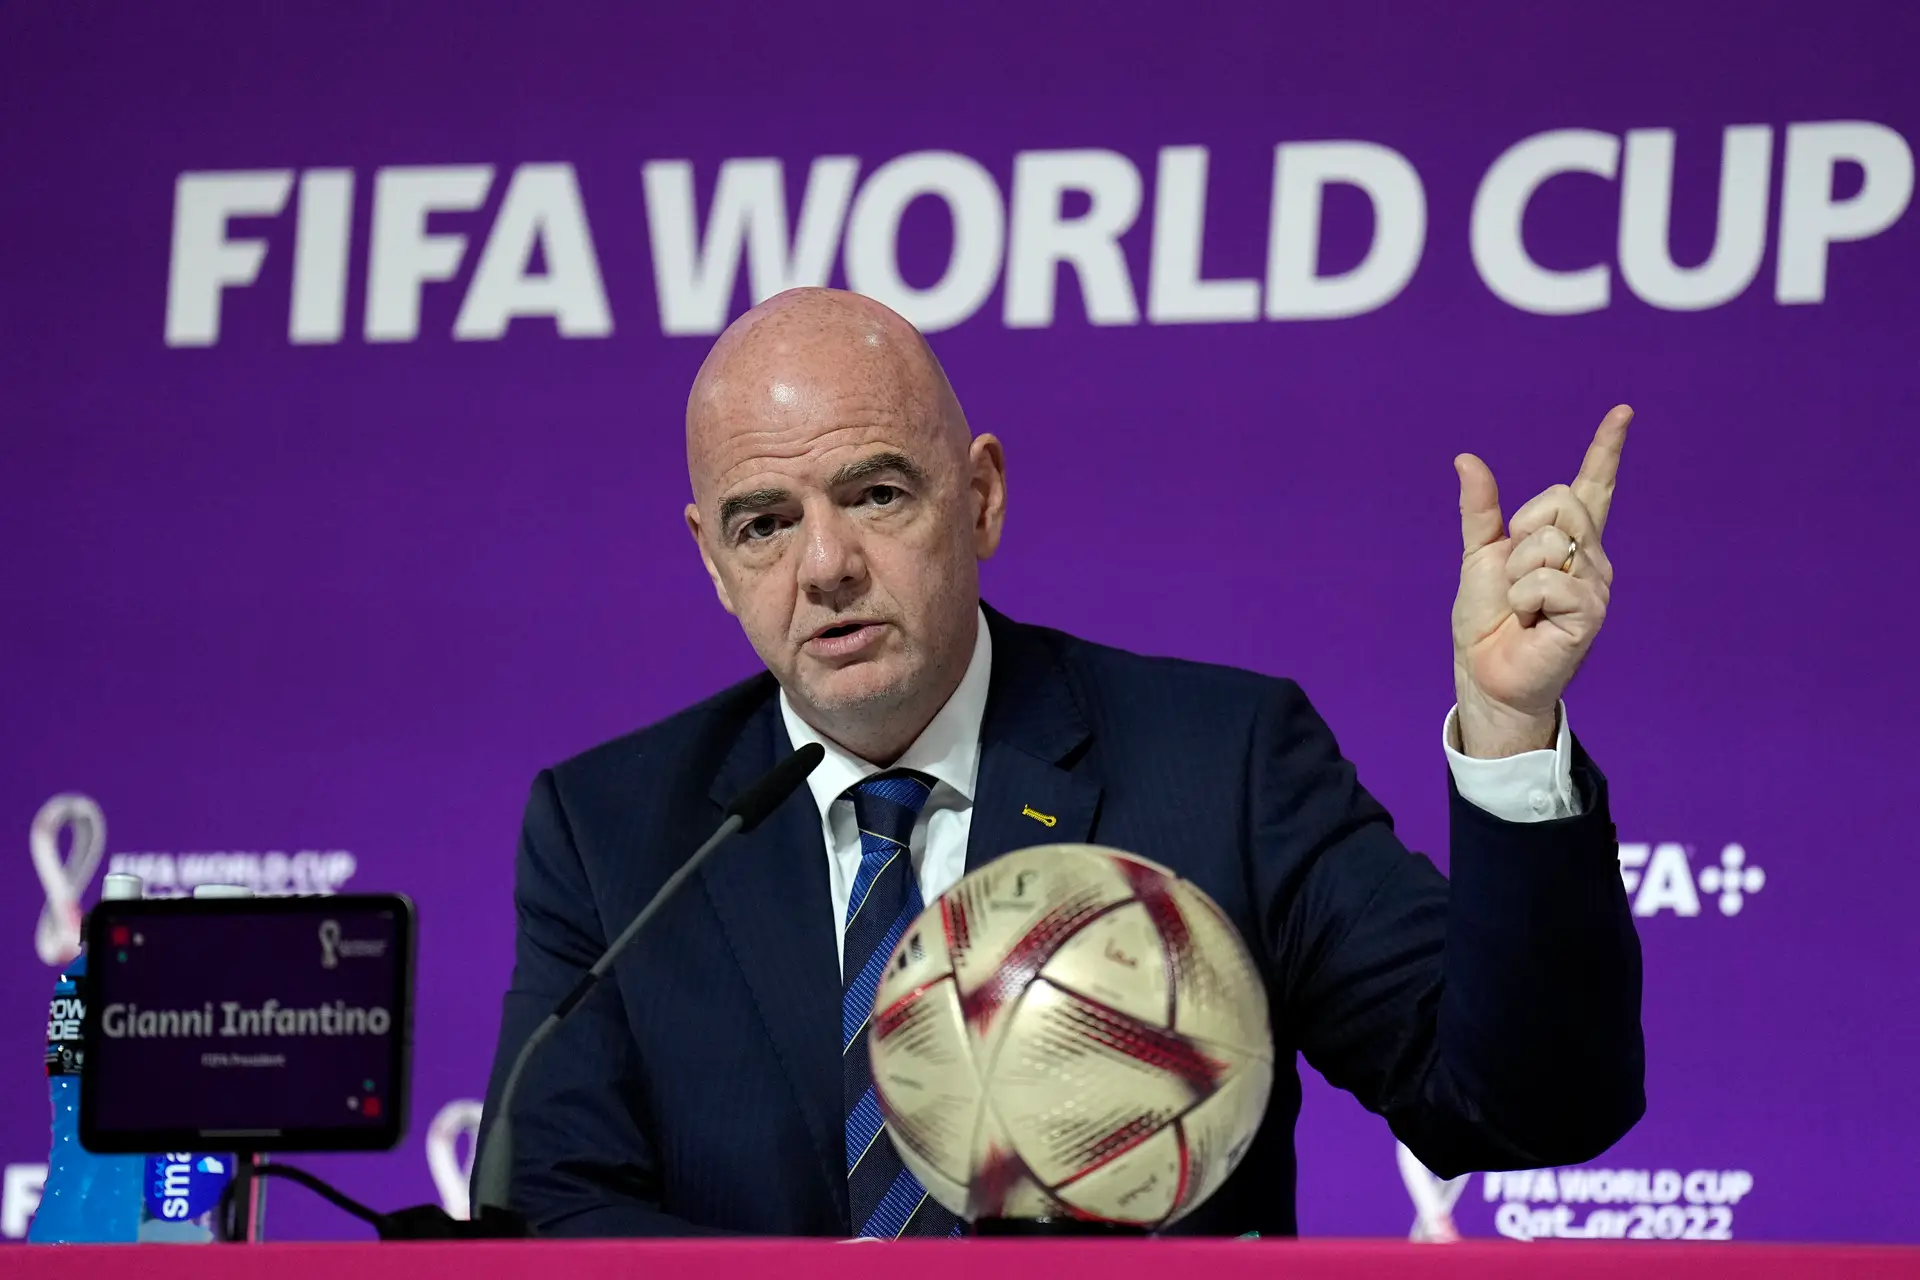 FIFA terá um novo Mundial de Clubes; entenda o motivo da mudança